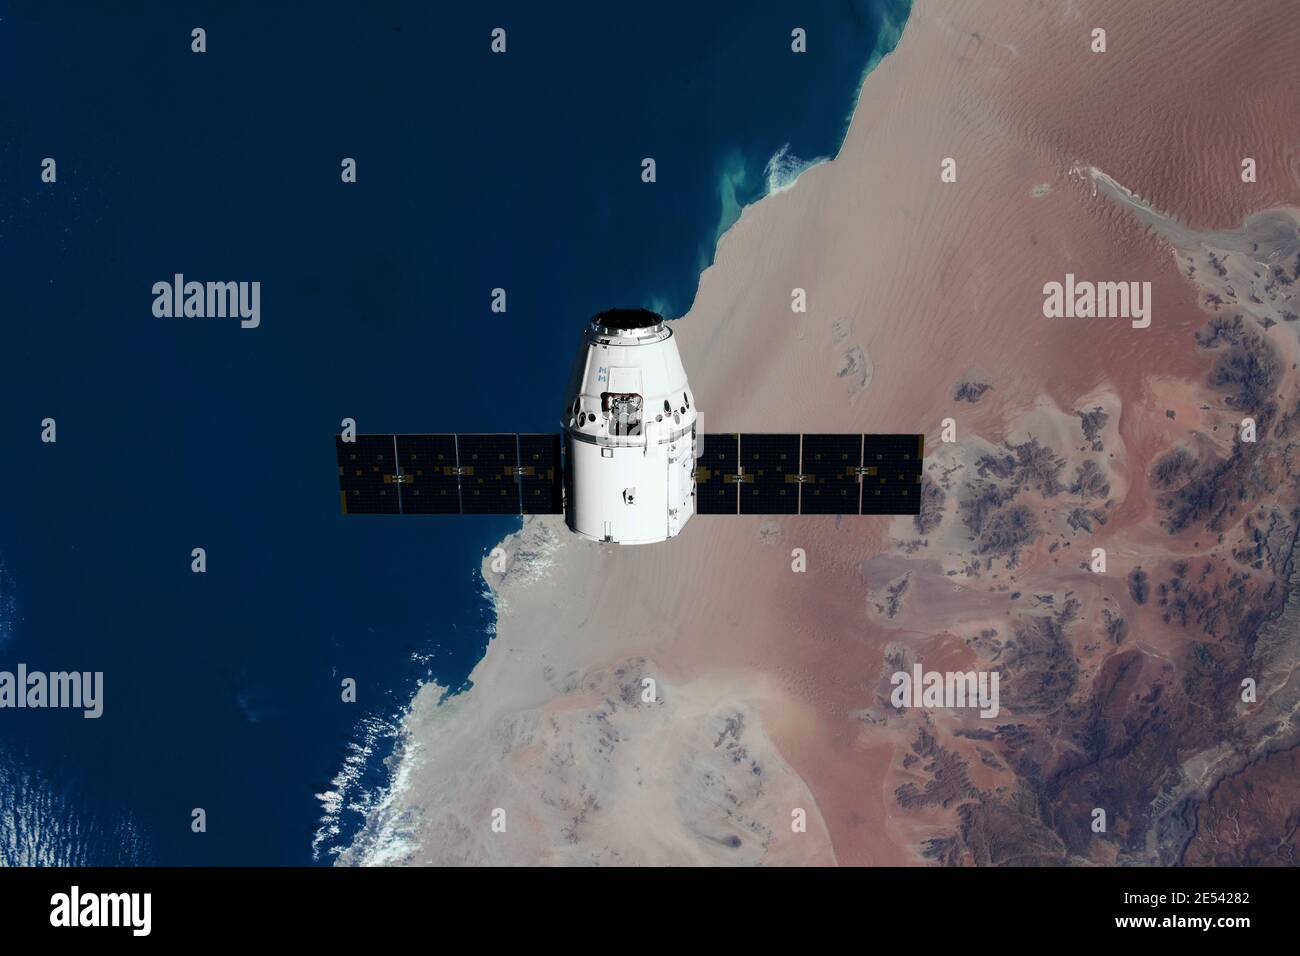 Le bateau de ravitaillement SpaceX Dragon est représenté à l'approche de la Station spatiale internationale. Éléments de cette image fournis par la NASA. Banque D'Images